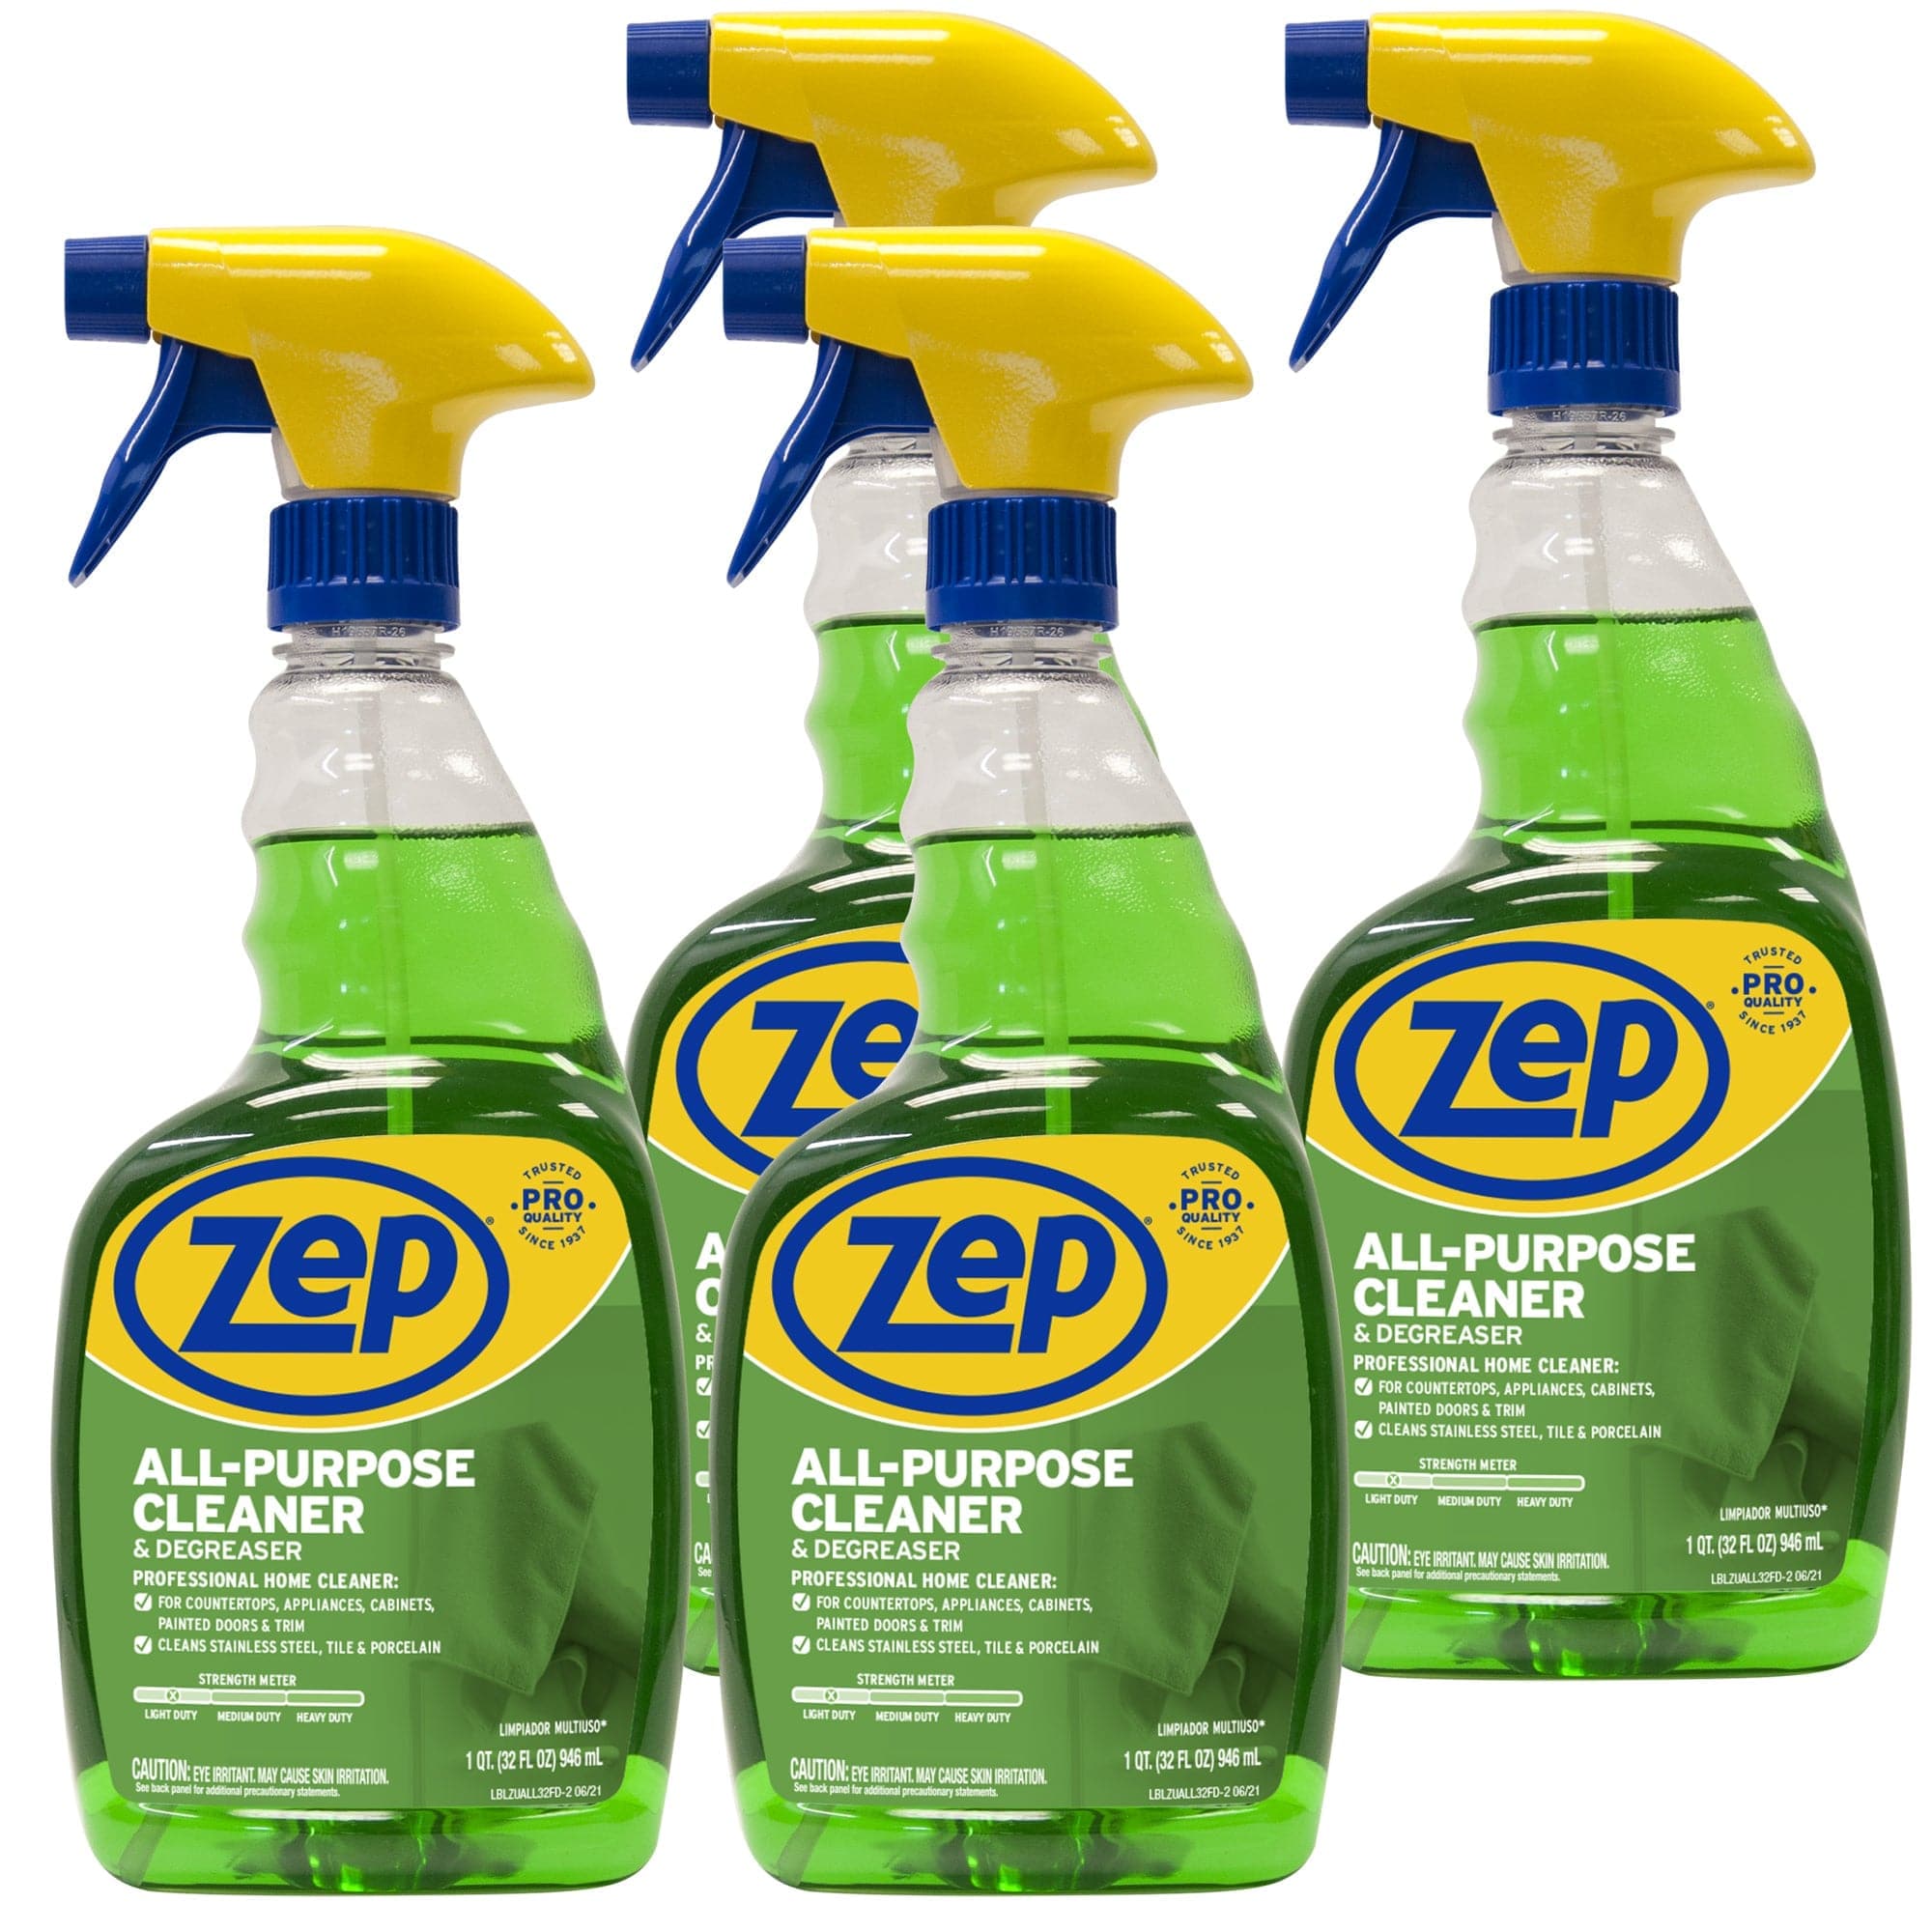 Spree All Purpose Cleaner, 32 oz. Trigger Spray Bottle, 12 Bottles/Case